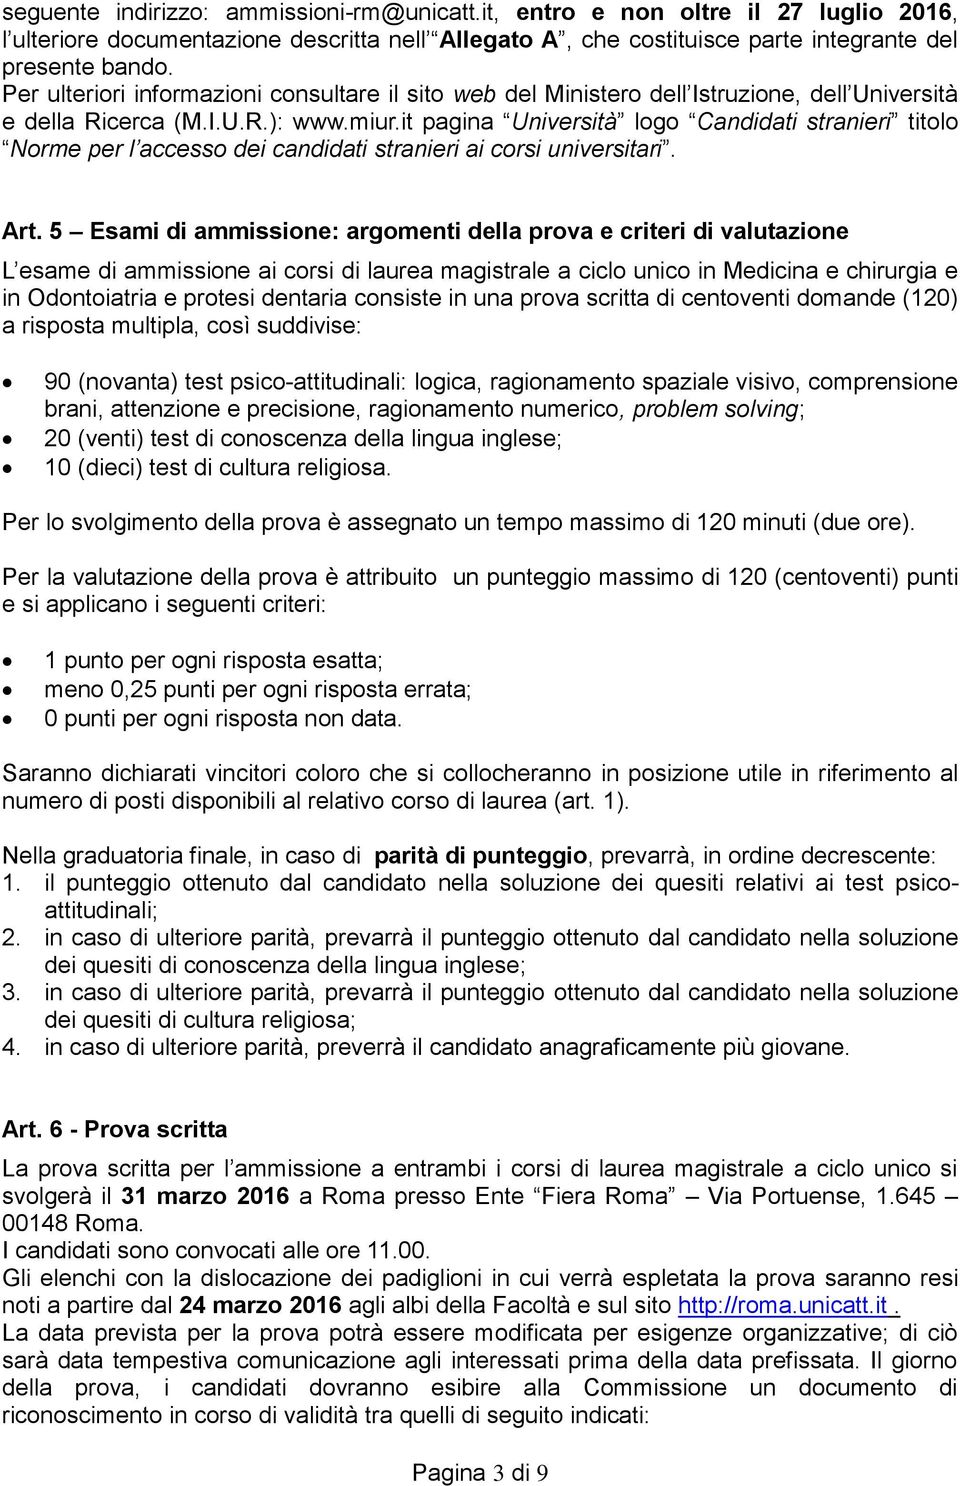 it pagina Università logo Candidati stranieri titolo Norme per l accesso dei candidati stranieri ai corsi universitari. Art.